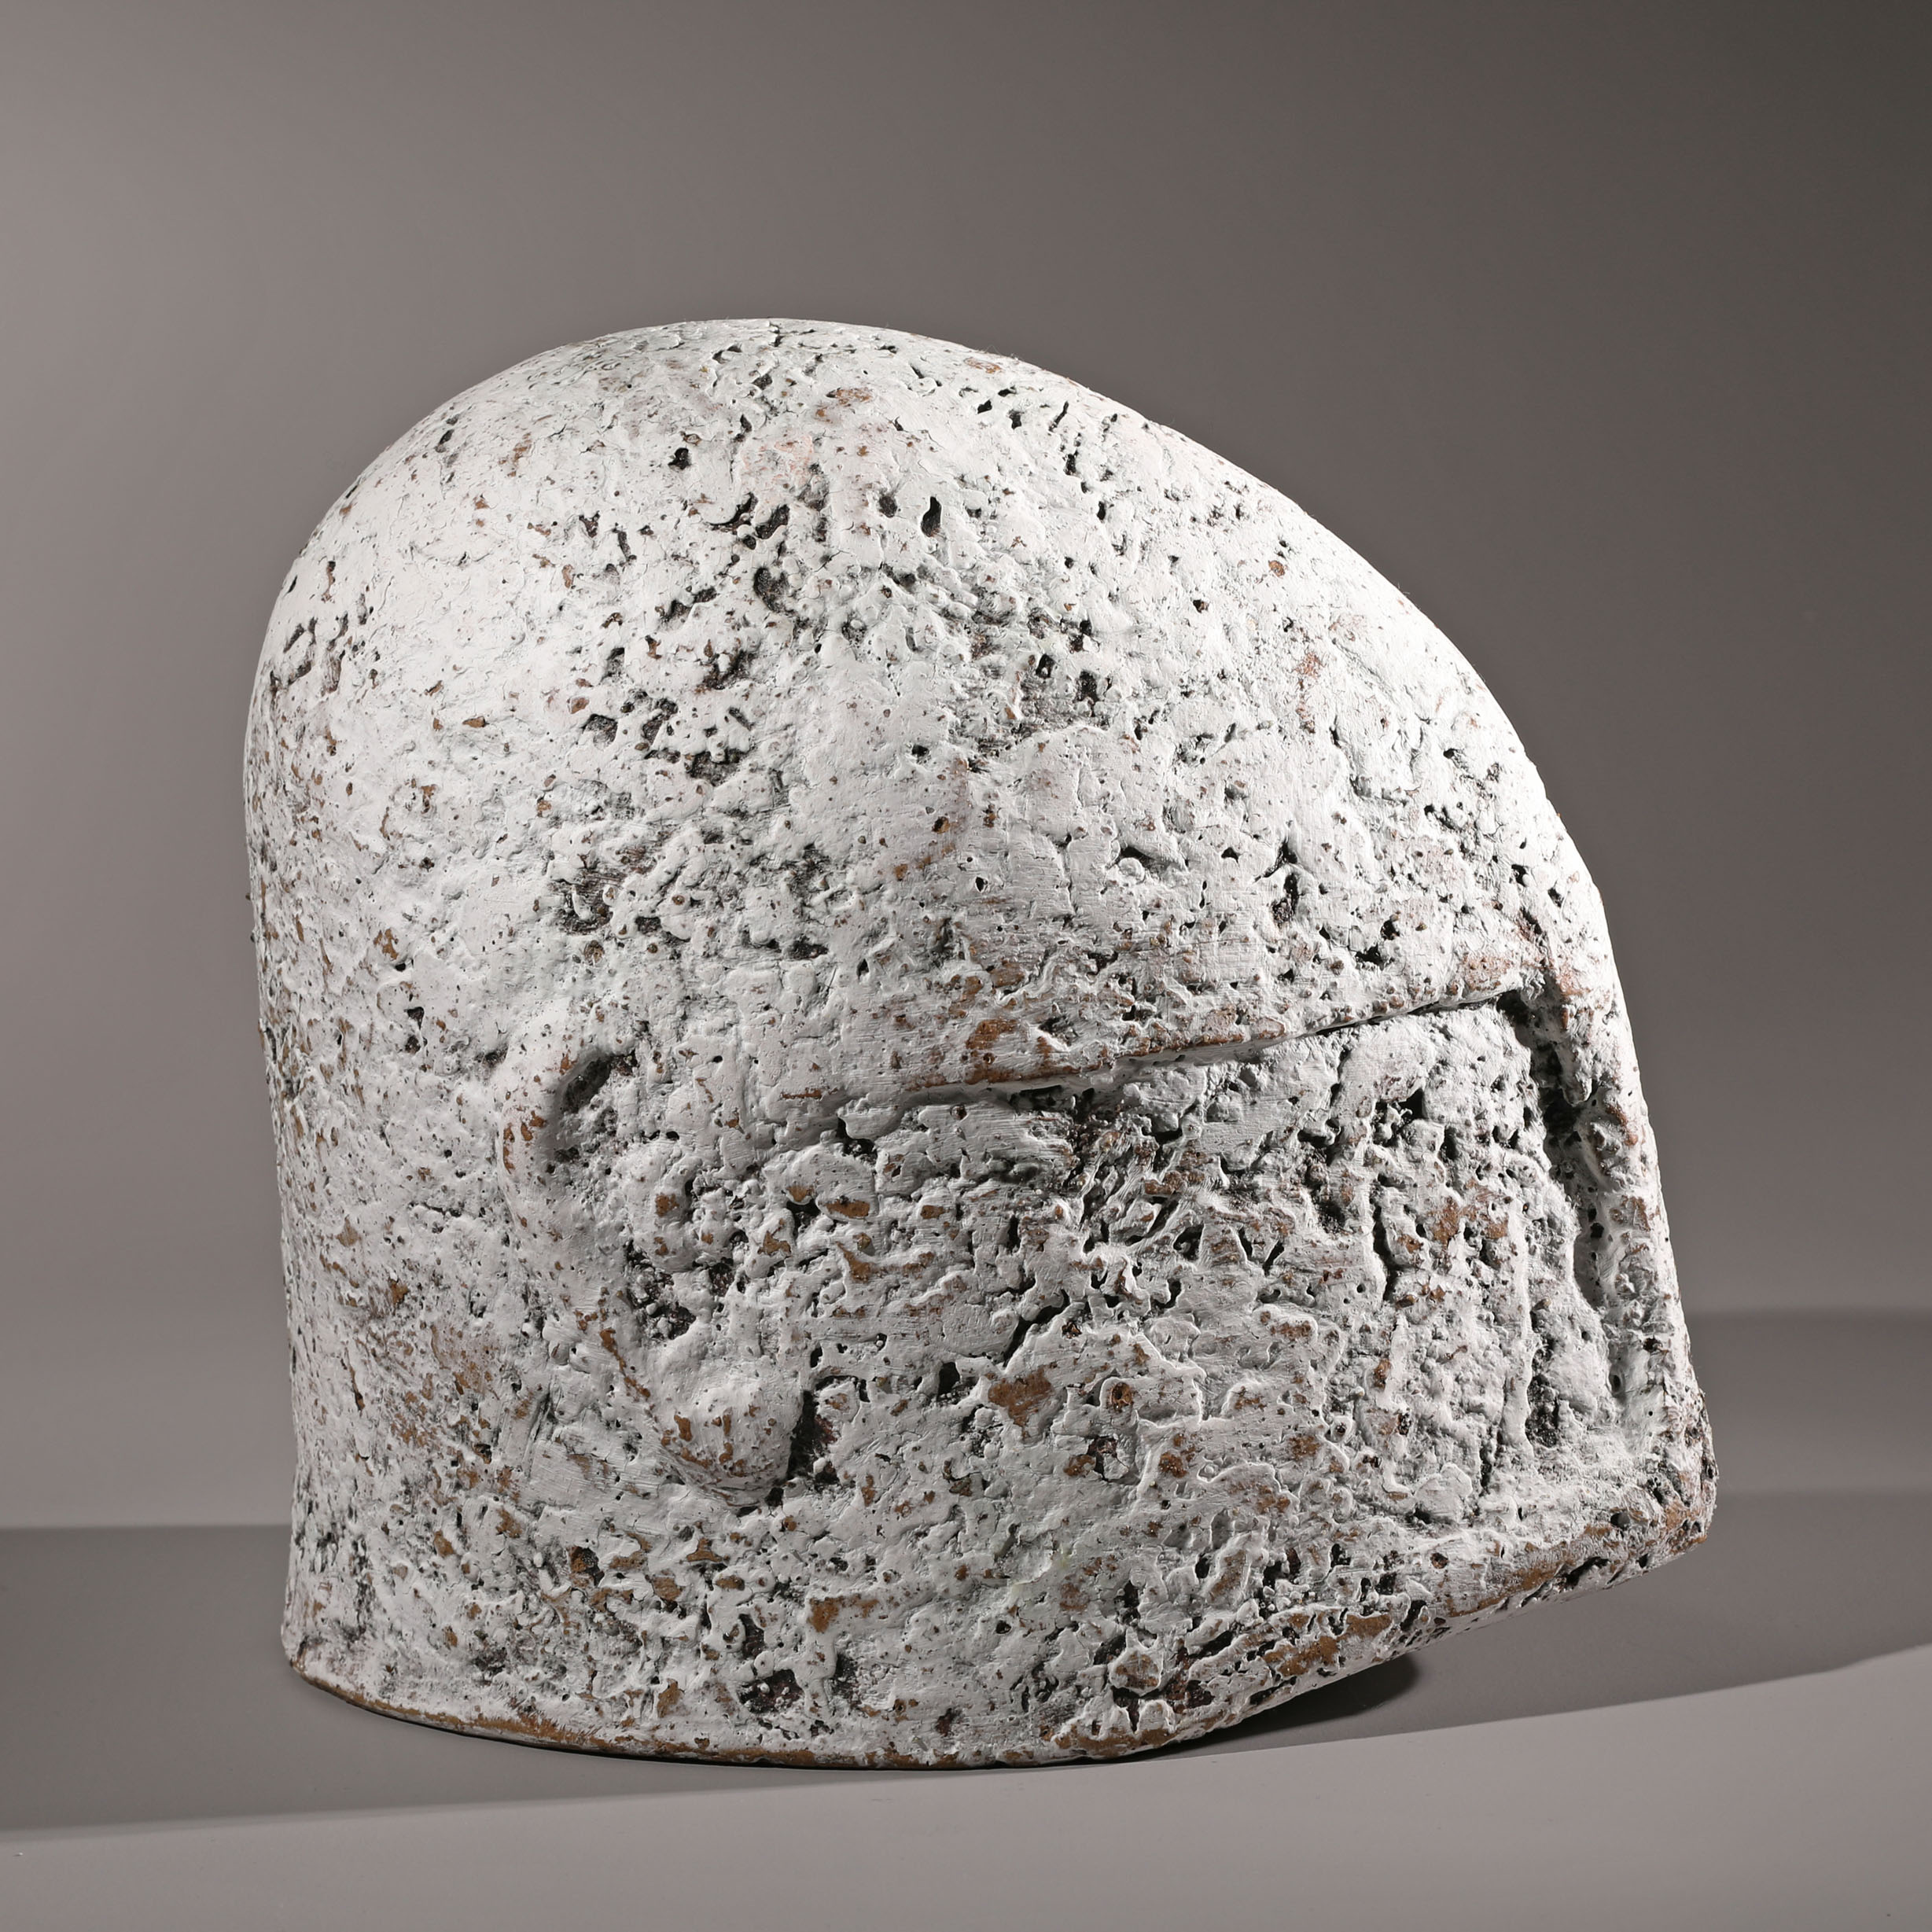 Fritz Vehring, Sculpture White Helmet